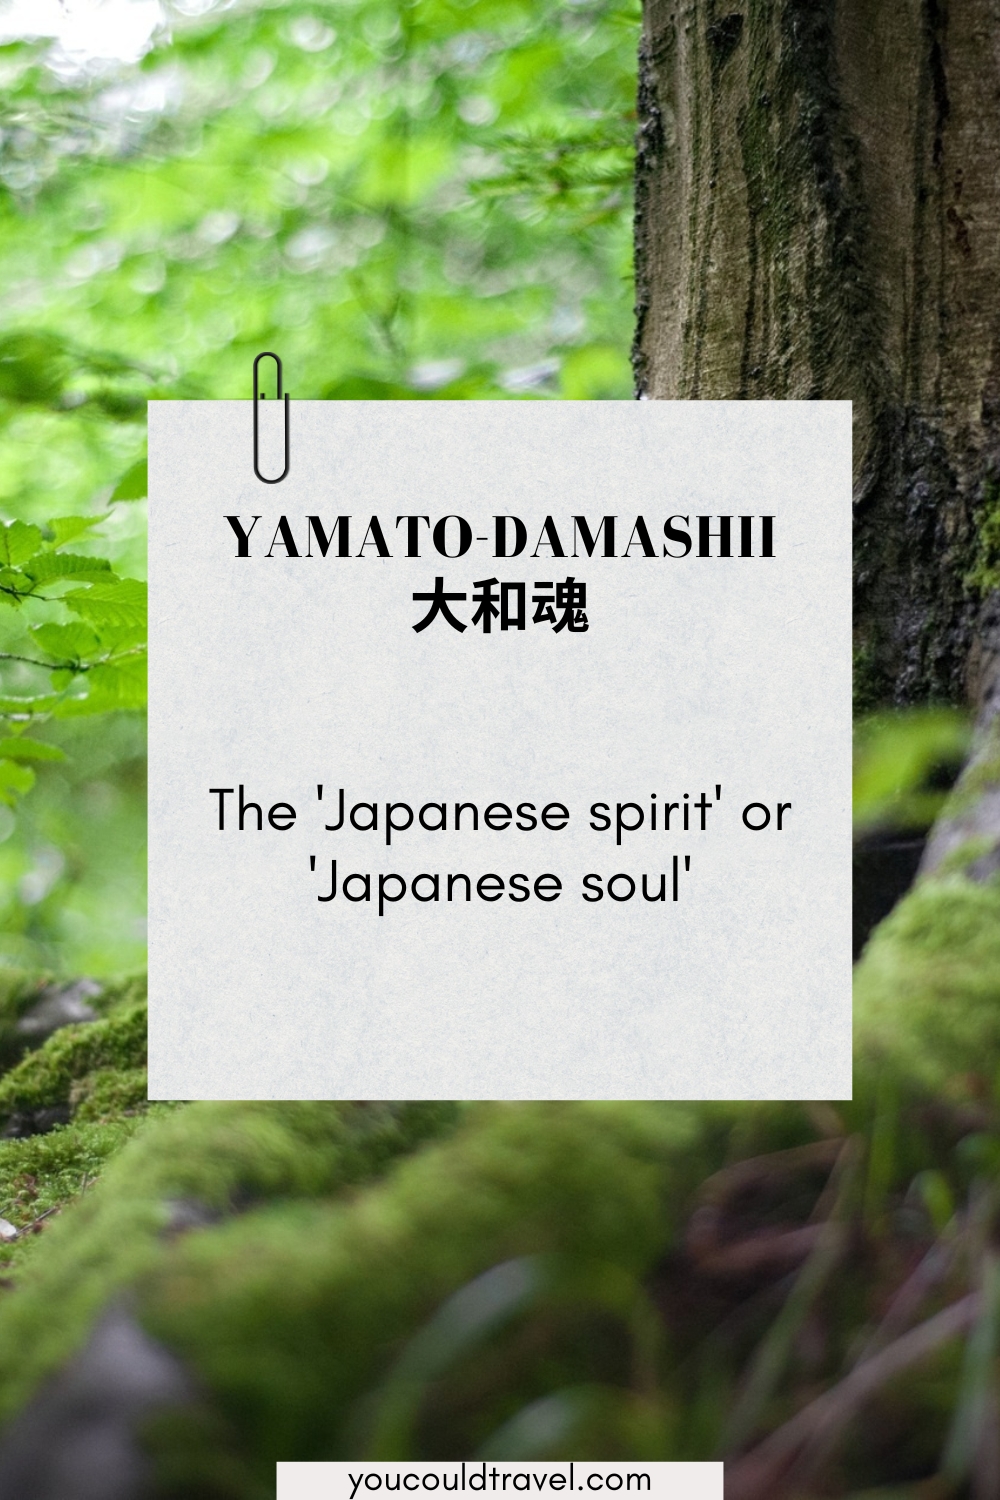 Yamato-damashii - Japanese word for the soul